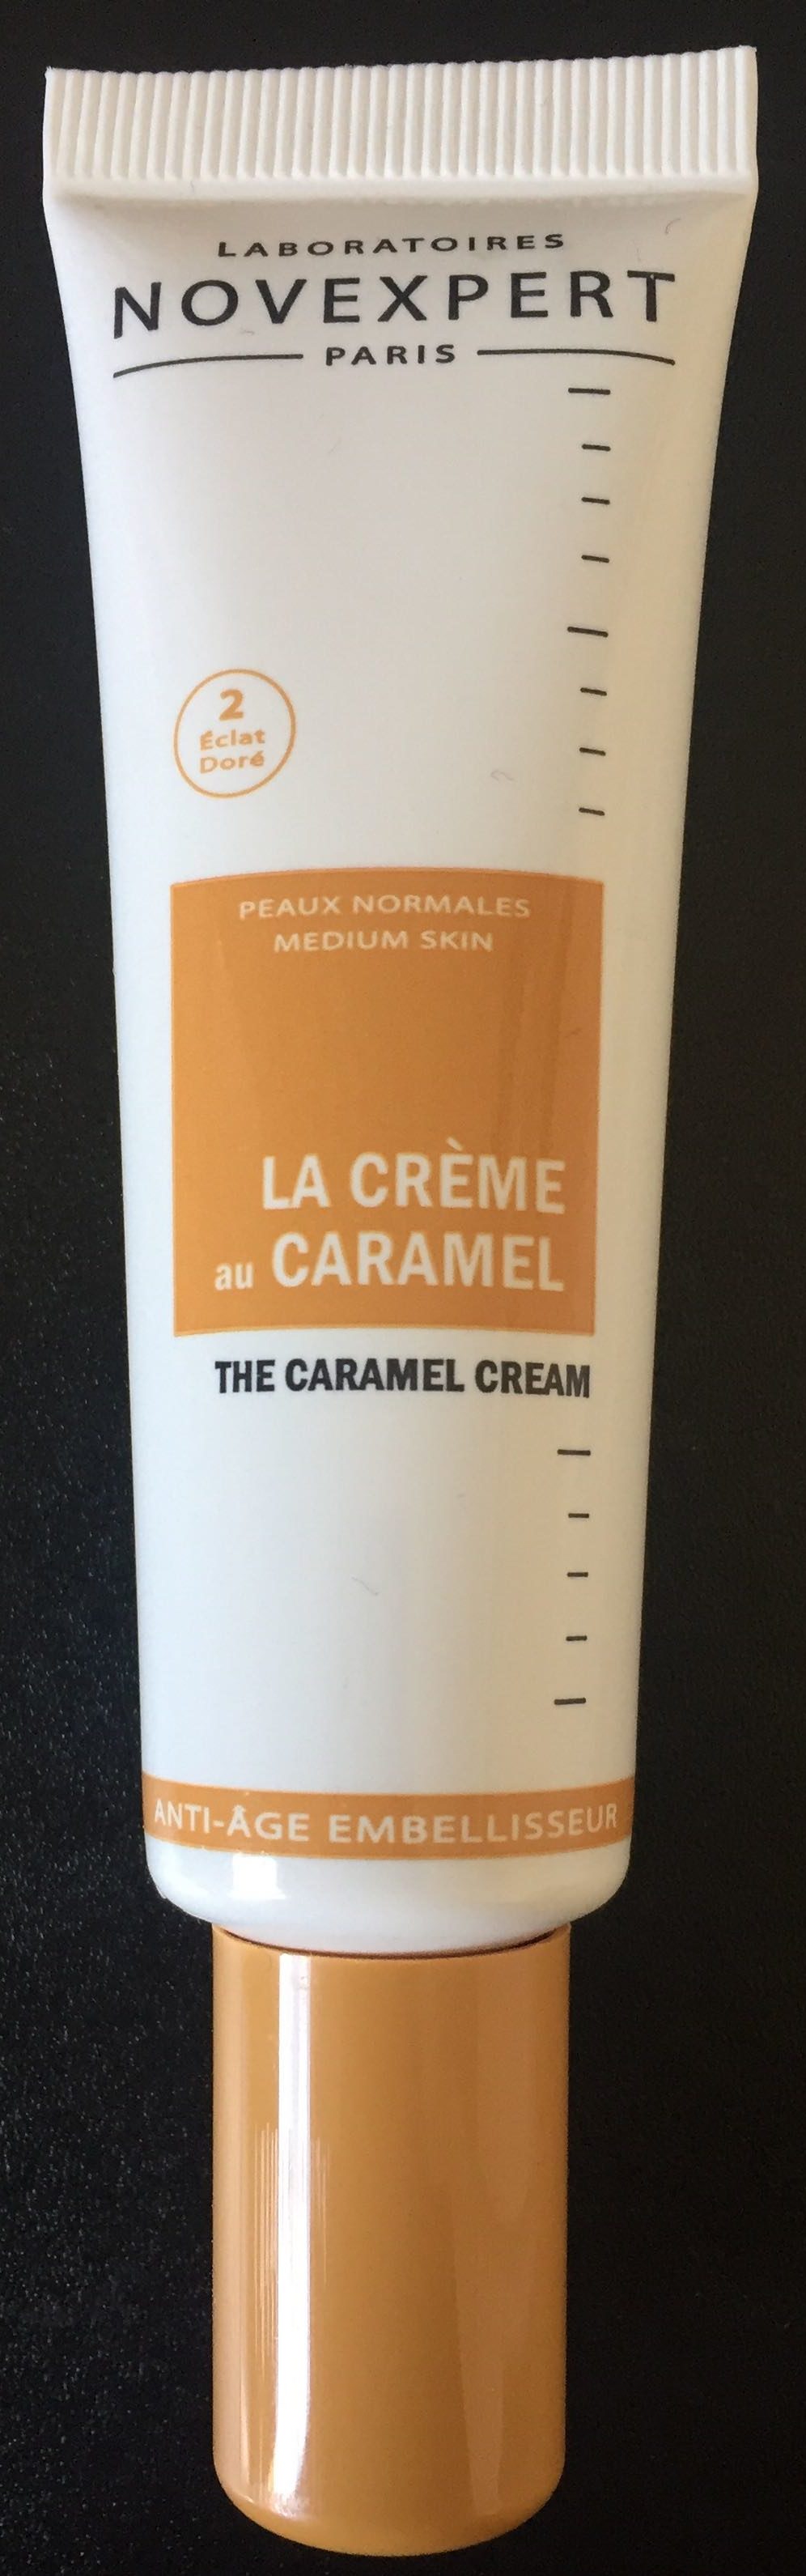 La Crème au Caramel - Product - fr